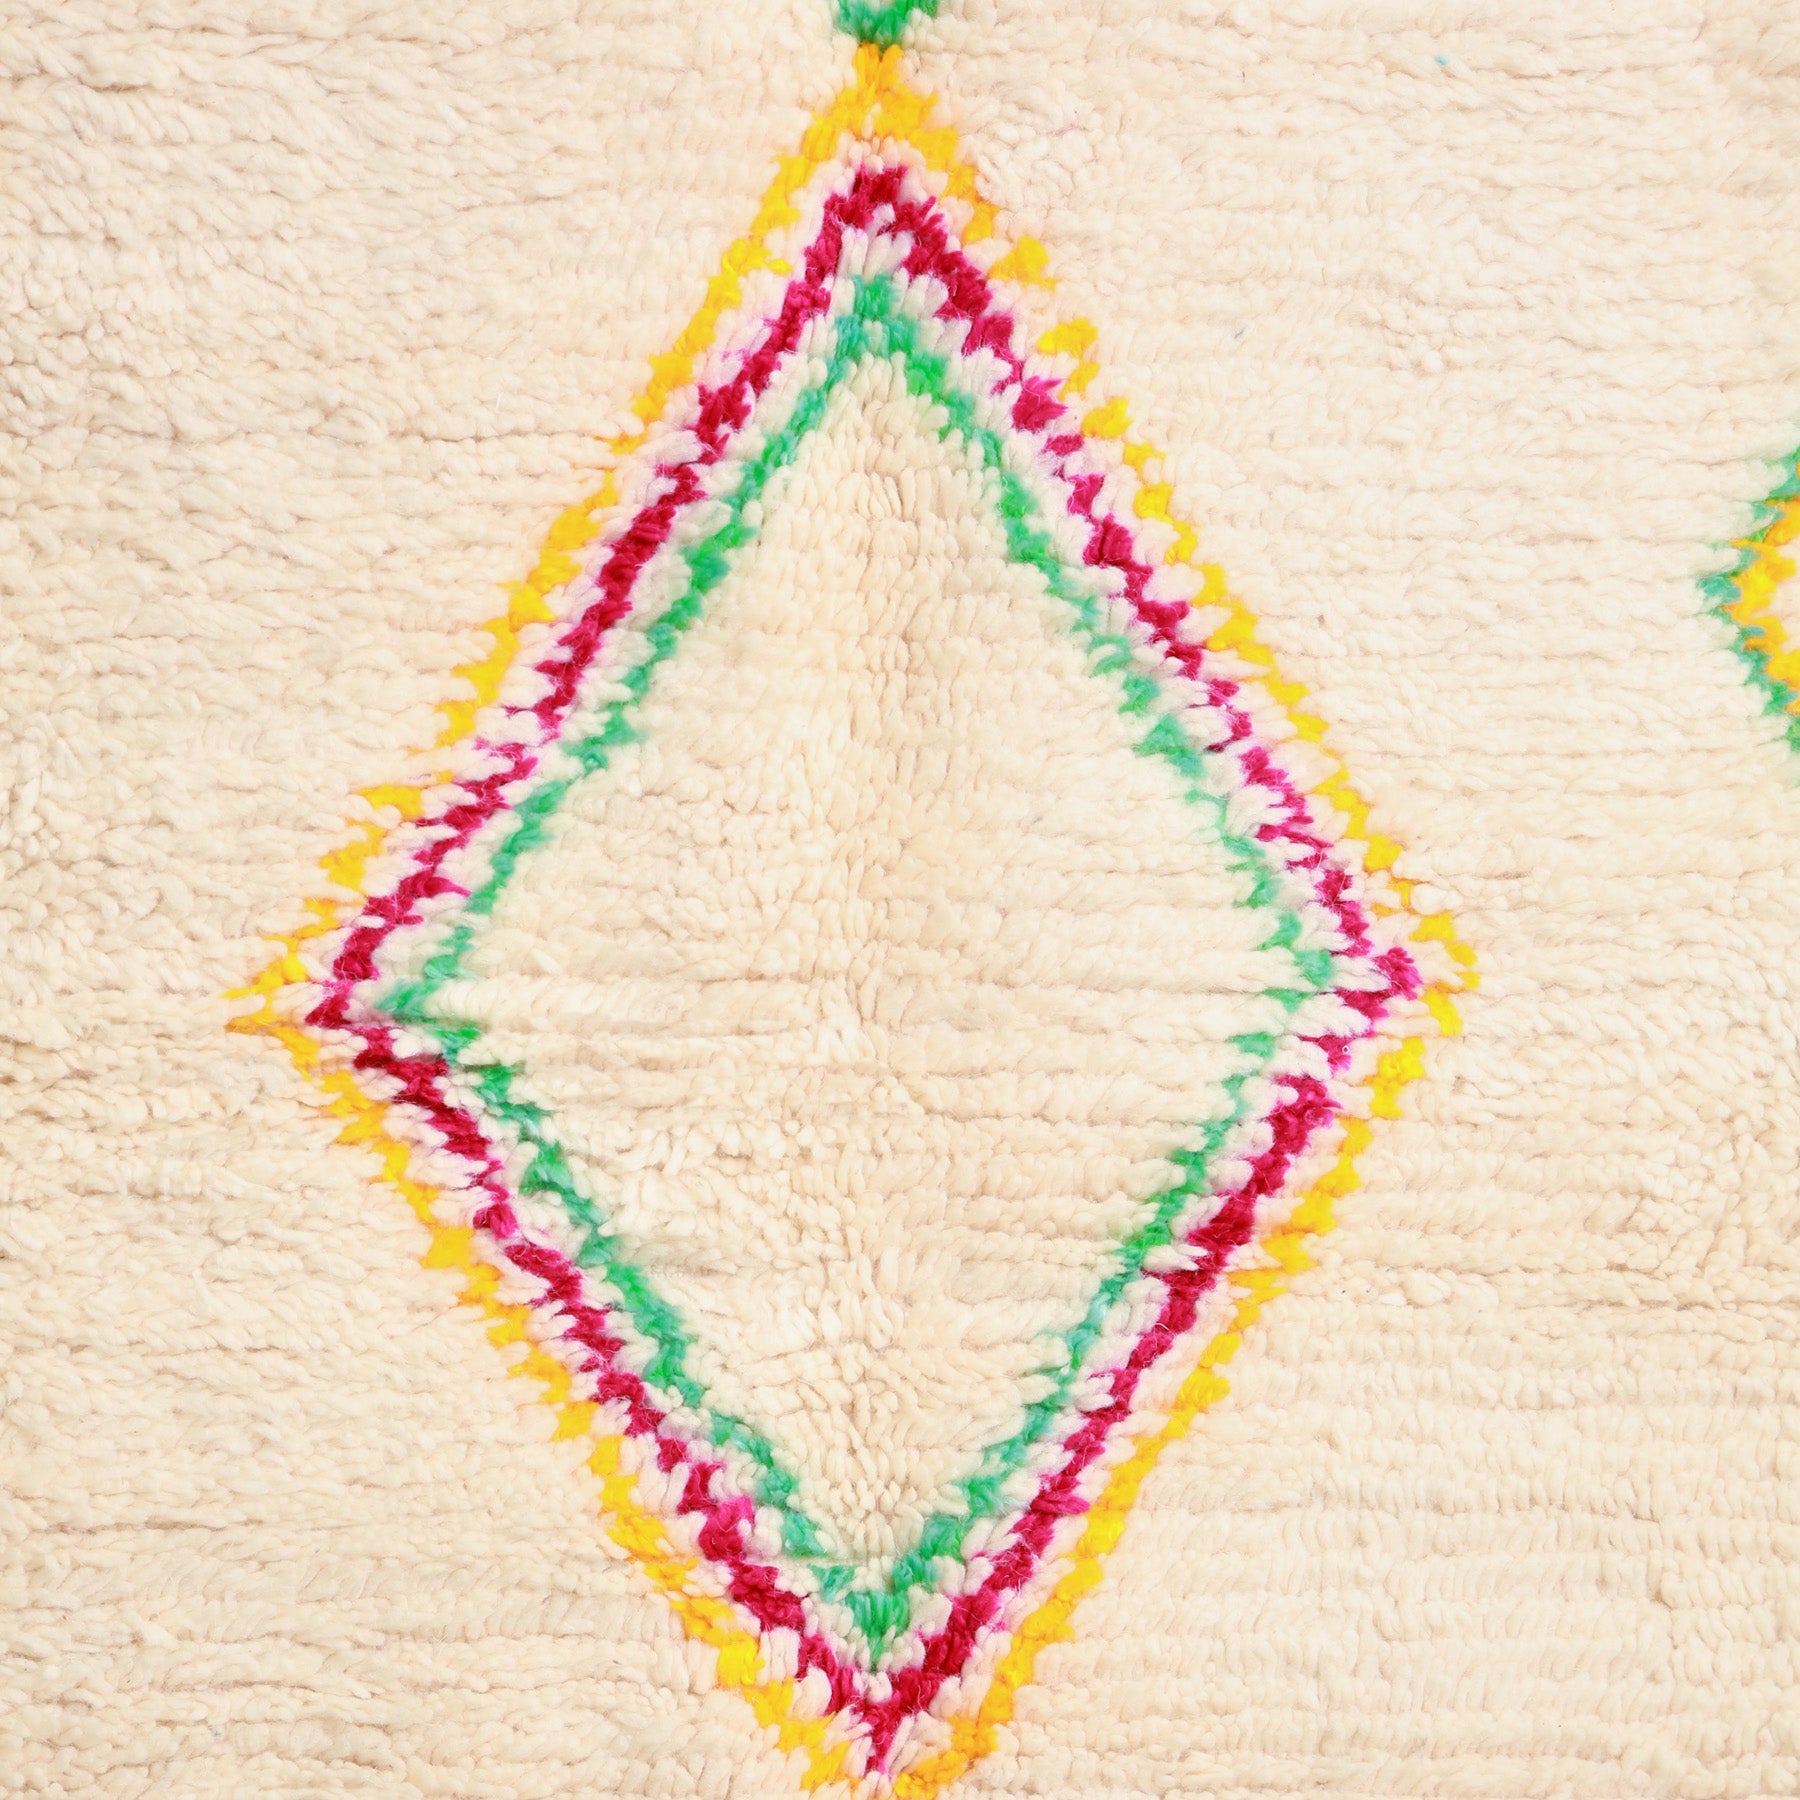 dettaglio di unn serie di rombi messi uno dentro l'altro di colore giallo, fucsia e verde su base chiara di un tappeto marocchino azilal 